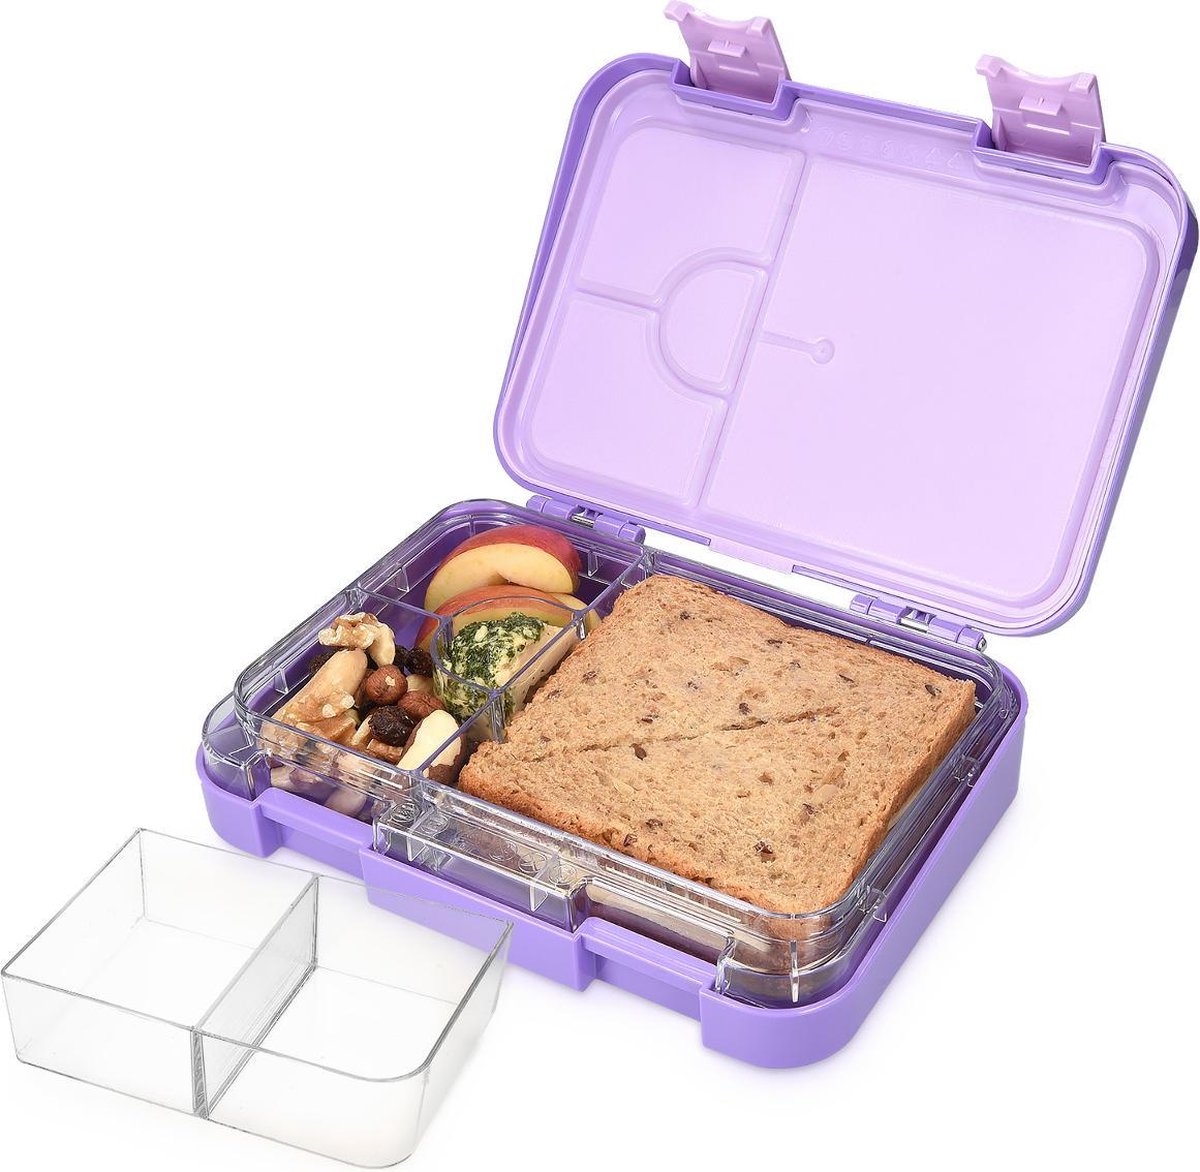 Navaris bentobox - Lunchbox met 4 tot 6 compartimenten - Broodtrommel met variabele vakjes - Voor lunch en tussendoortjes op werk - Paars